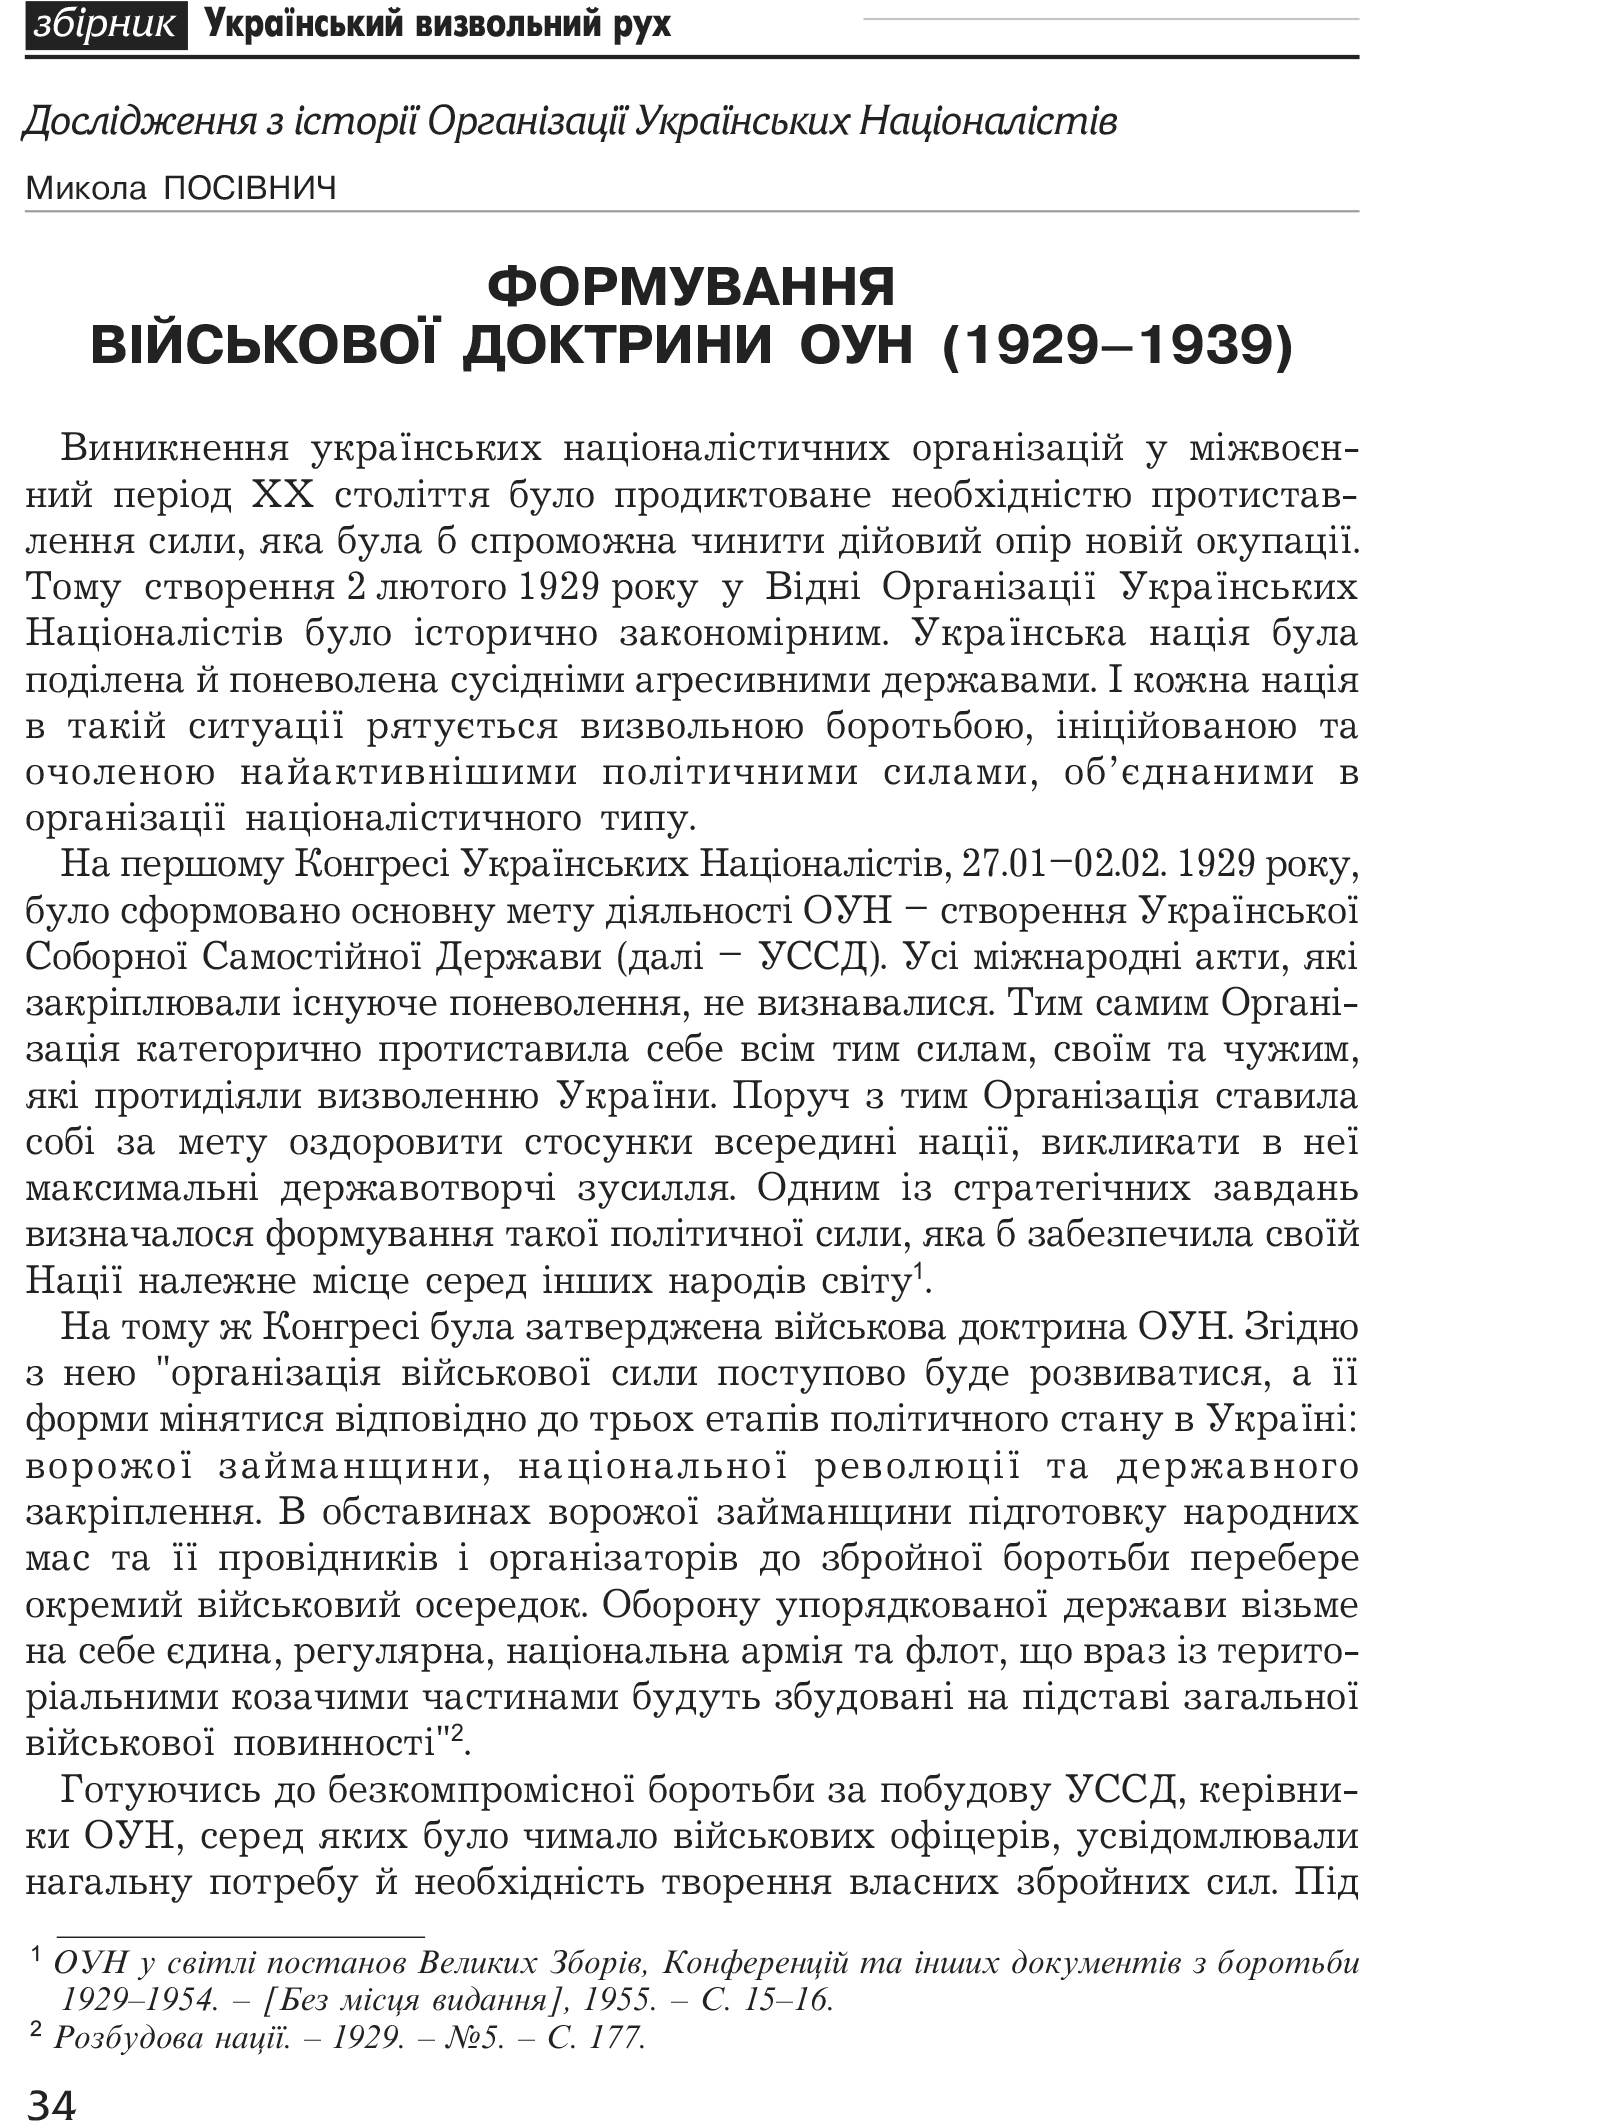 Український визвольний рух №1, ст. 34 - 44